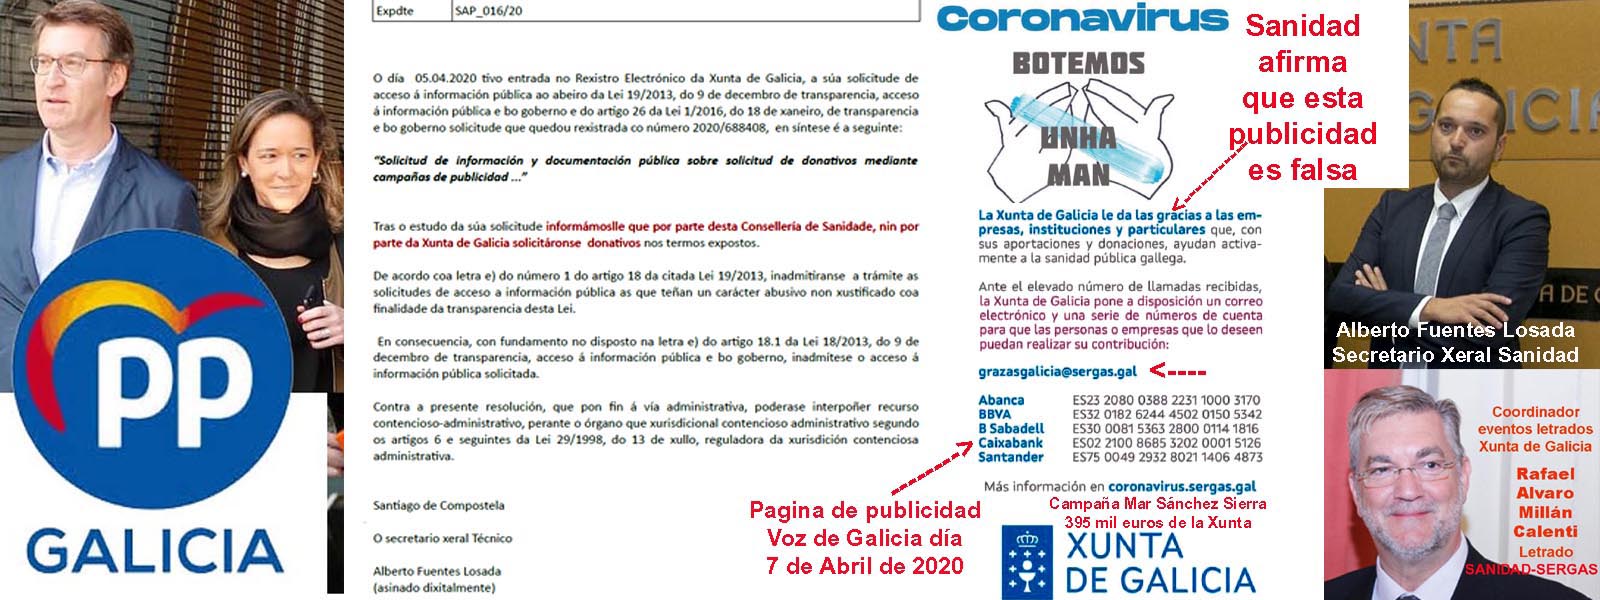 Exclusiva; El Gobierno de Feijóo esta blanqueando dinero de donativos  anónimos mediante 4 cuentas bancarias justificadas en el coronavirus que  niega su existencia el Sergas. | Xornal Galicia